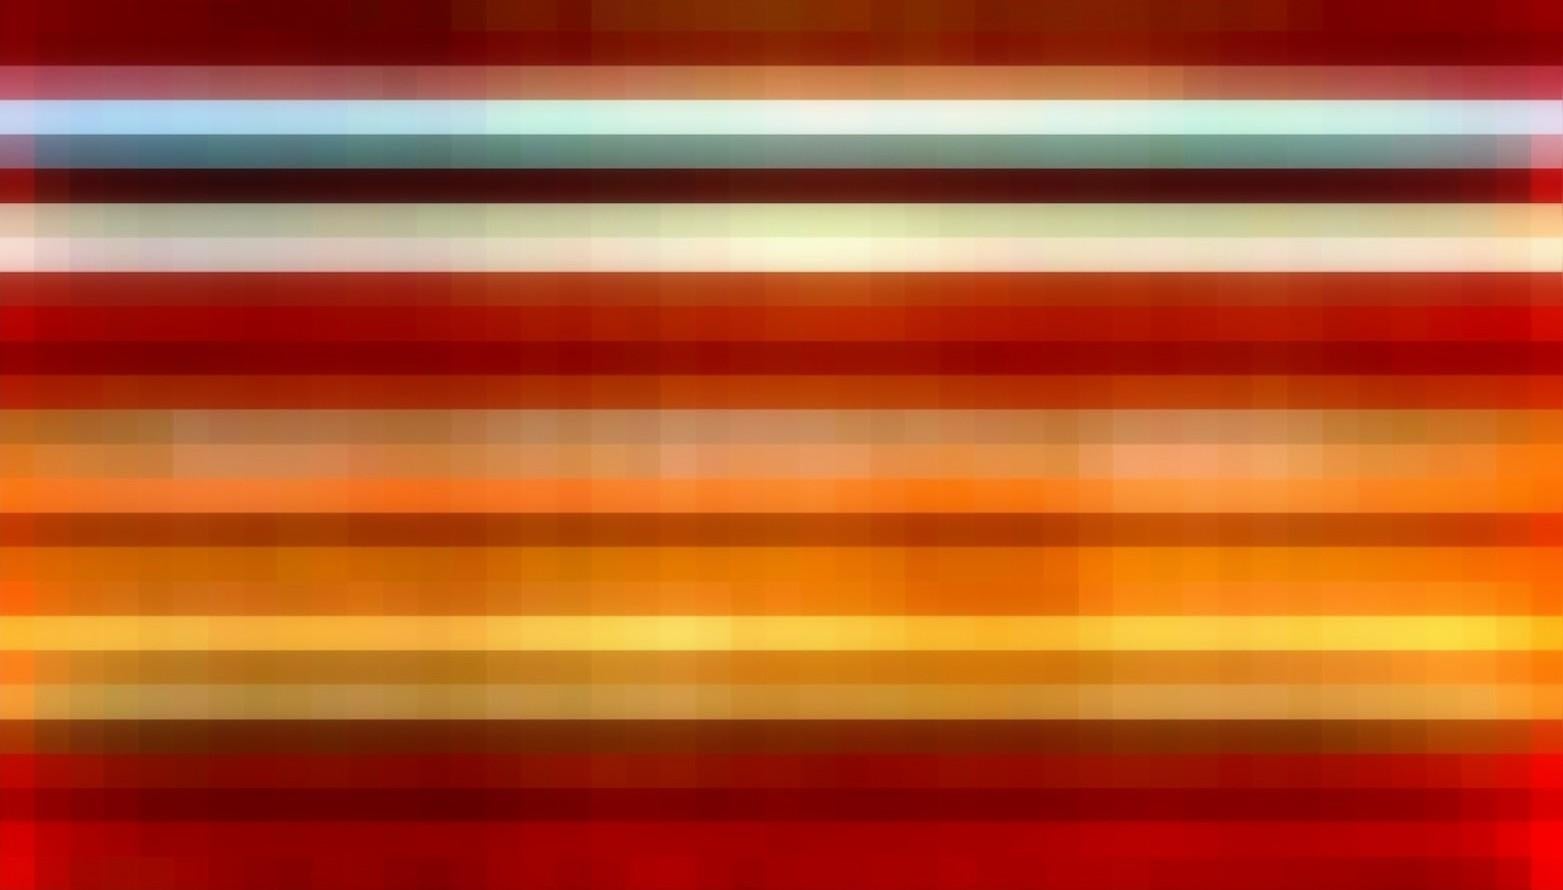 Broken Television 206, abstrait, rouge, orange, jaune, photo, impression numérique - Contemporain Print par Patty deGrandpre